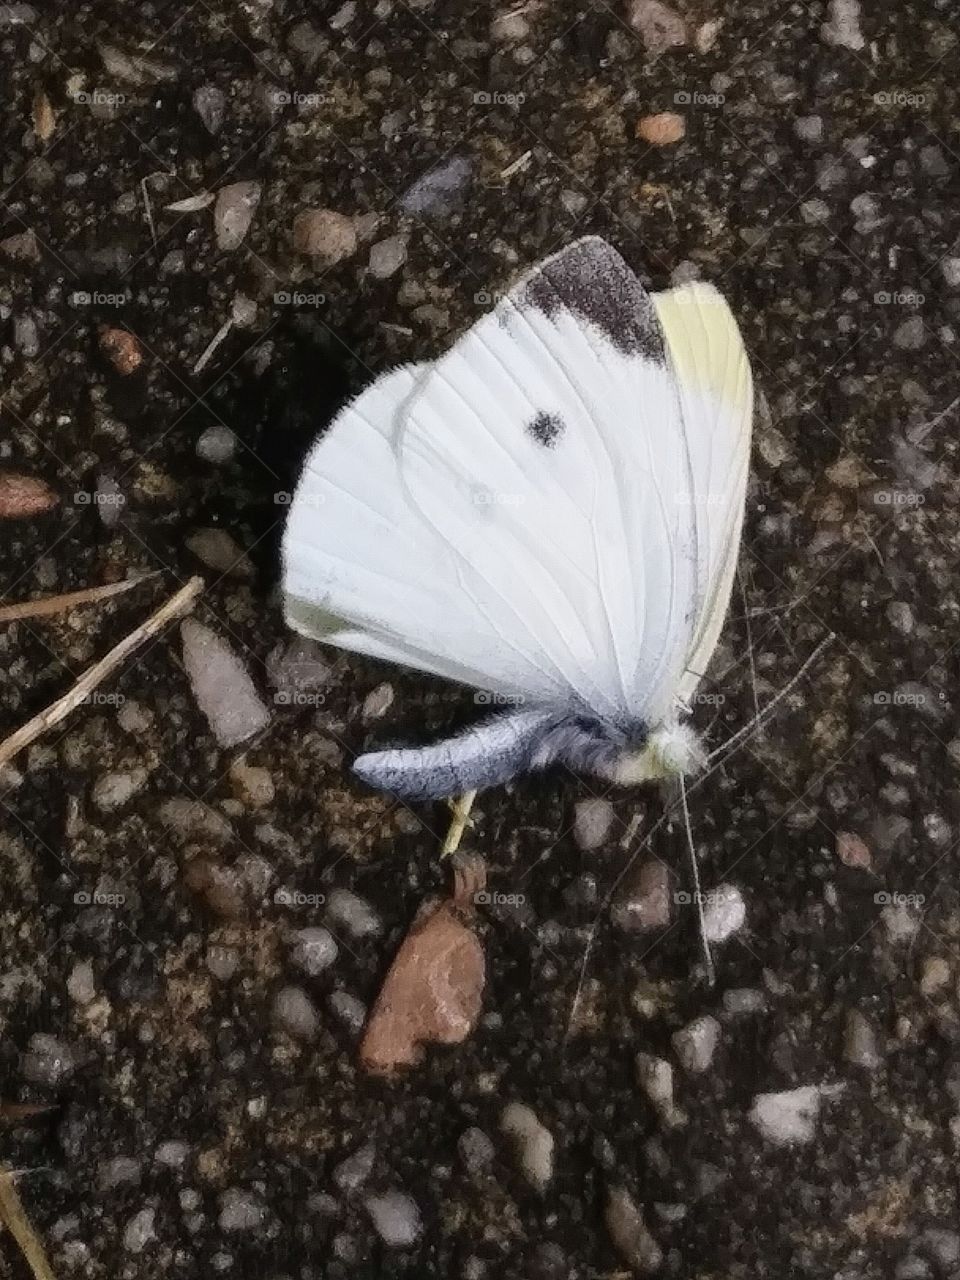 dead butterfly